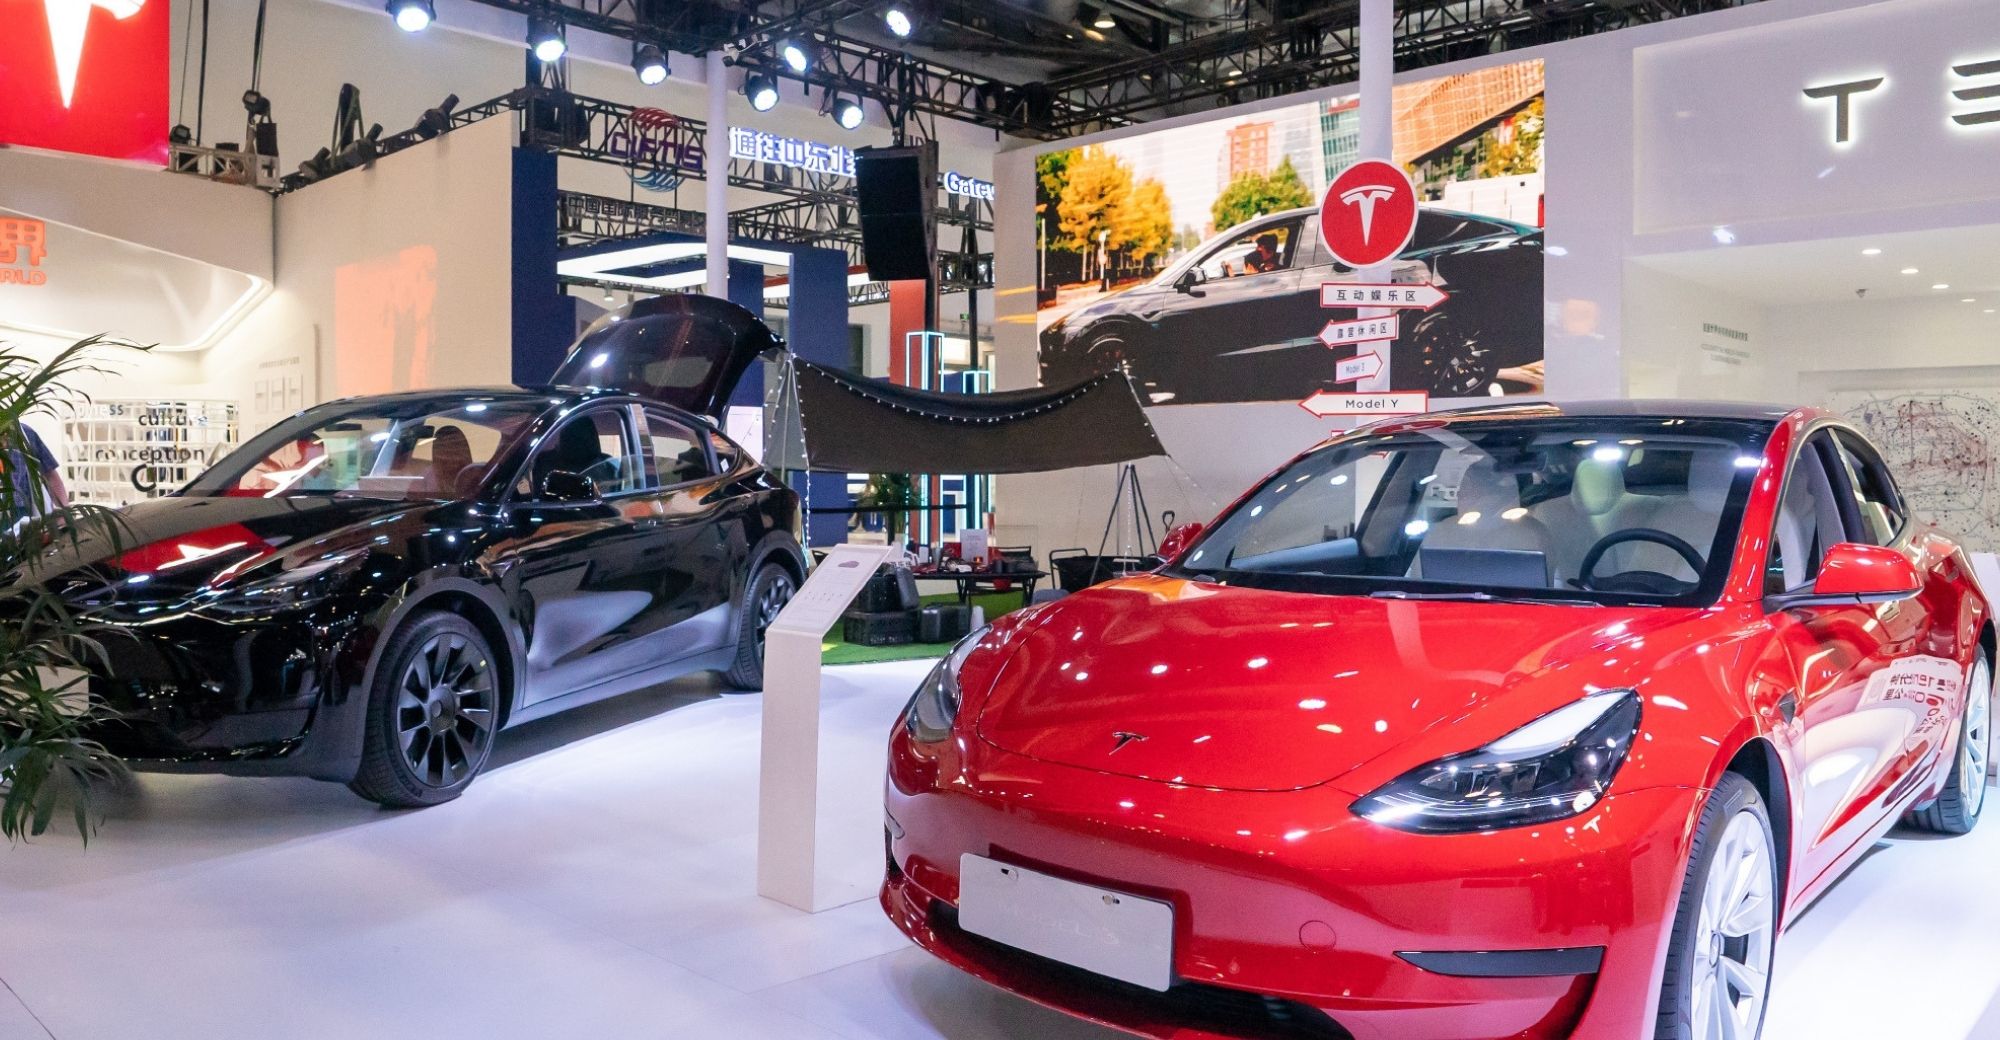 ยอดขาย Tesla ในจีนคาดว่าจะสูงถึง 77,000 คันในเดือนสิงหาคม